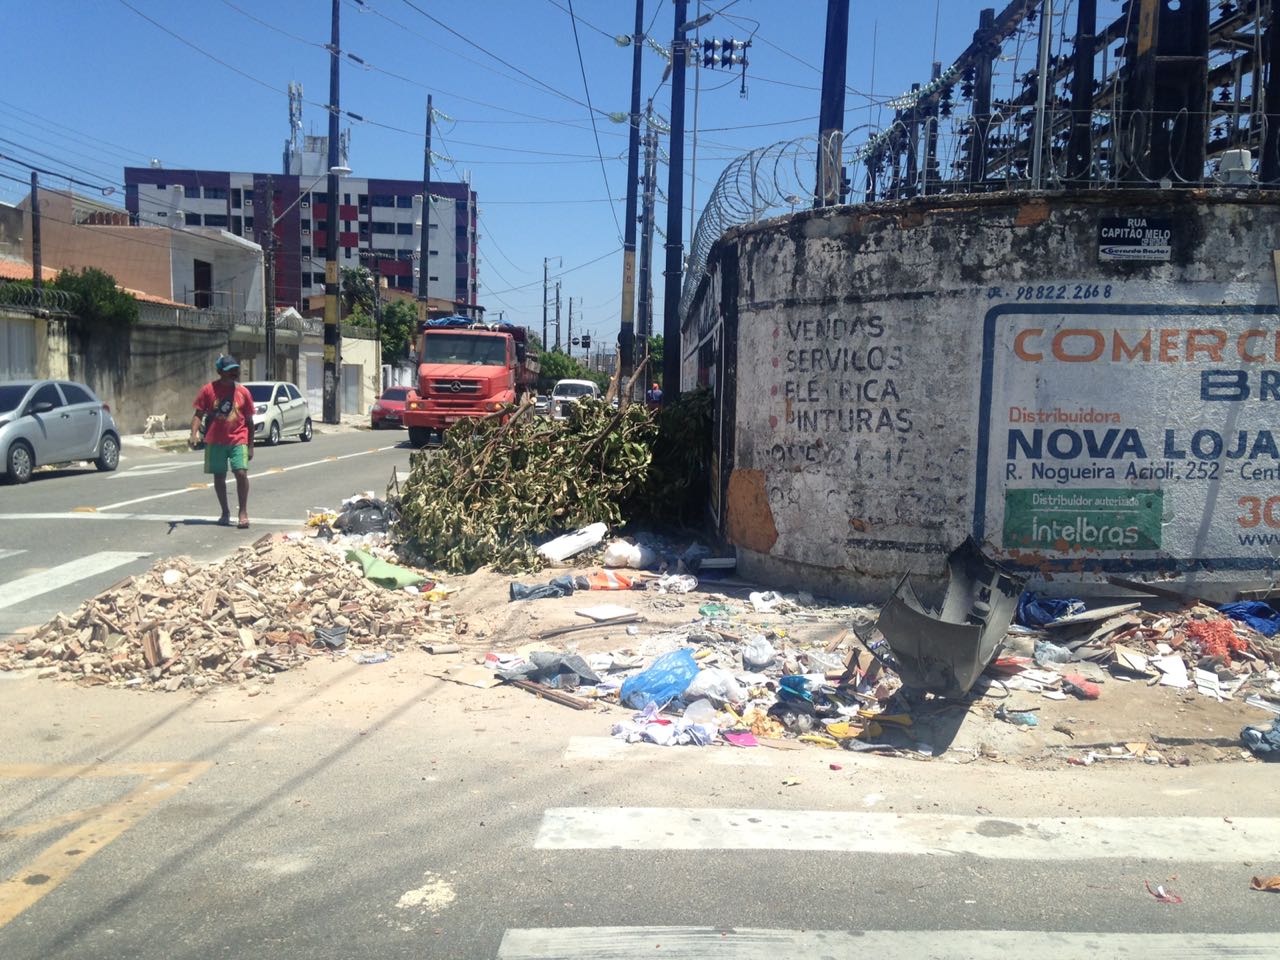 Ponto de lixo crônico localizado no cruzamento das Ruas Capitão Melo com Eduardo Bezerra